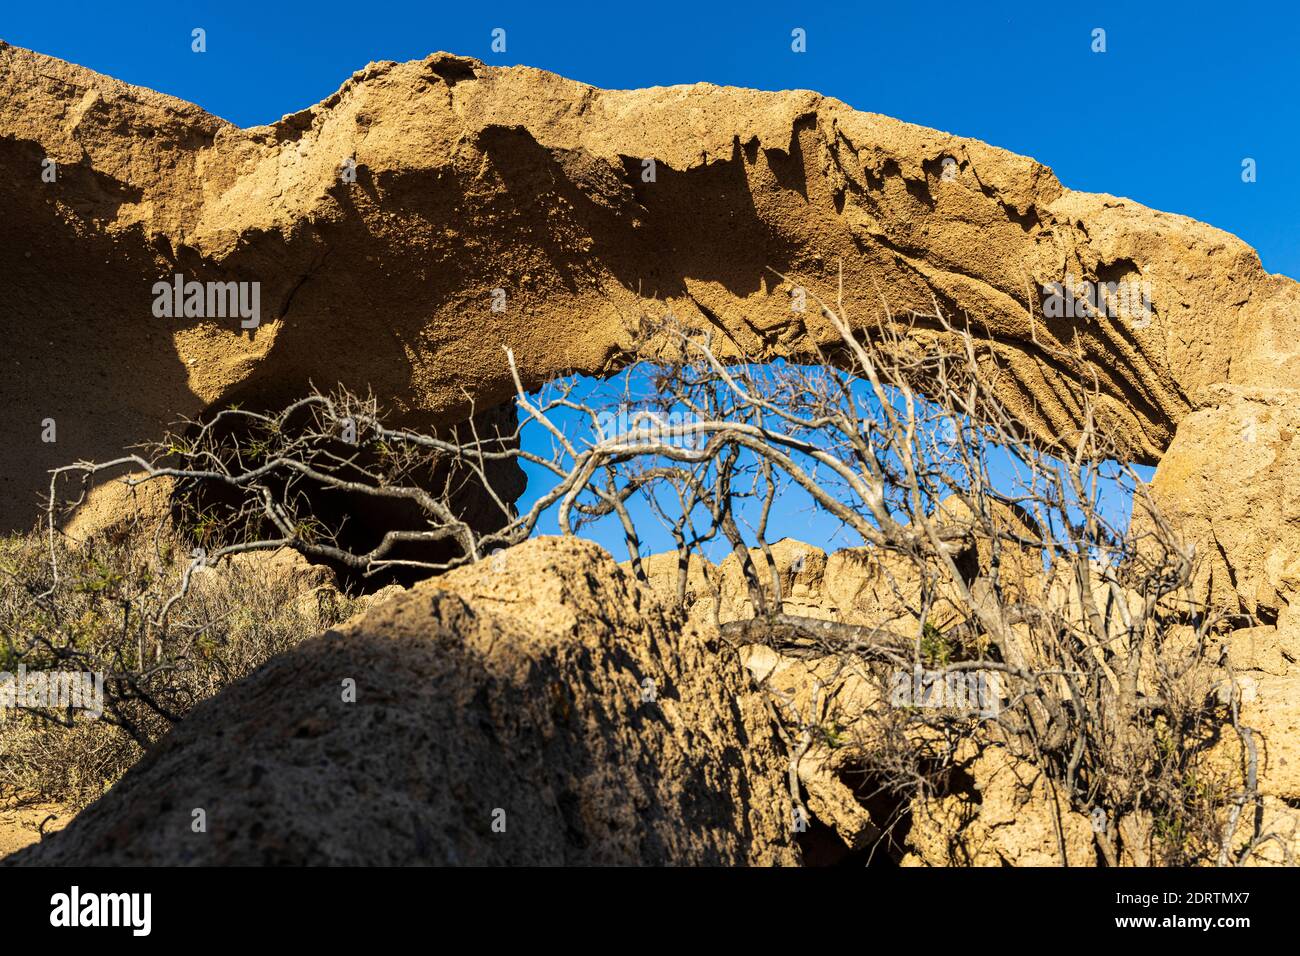 Bogen von Tajao, eine vulkanische Landschaft, pyroklastische Ablagerungen, durch Zusammenbruch und Erosion gebildet, Tajao, Teneriffa, Kanarische Inseln, Spanien Stockfoto